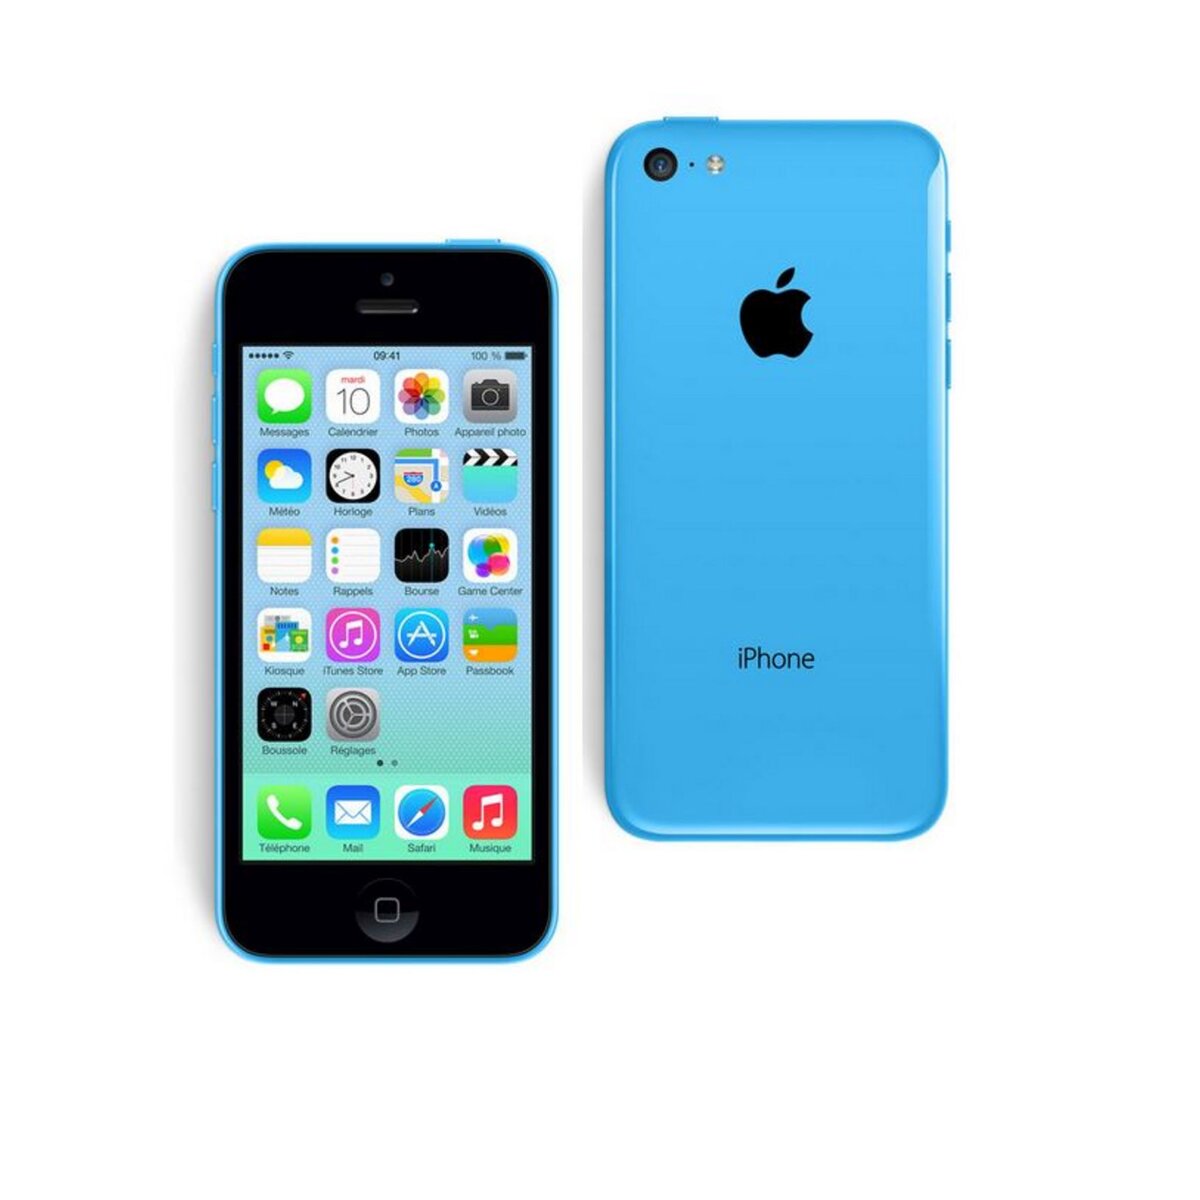 Apple iPhone 5C - Bleu - Reconditionné Lagoona - Grade A - 8 Go